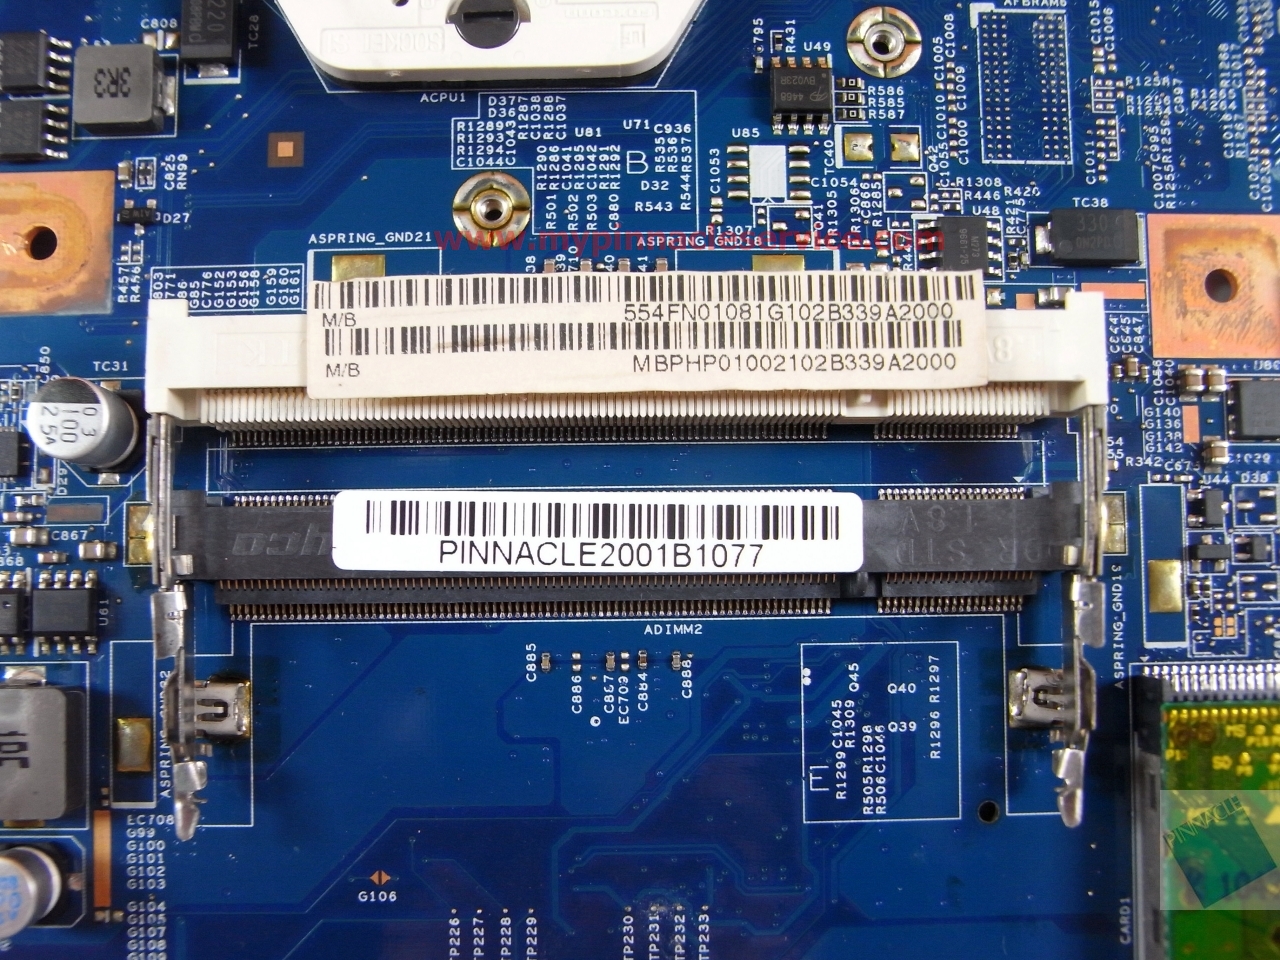 mbphp01002-motherboard-for-acer-aspire-5542-5542g-48.4fn02.011-jv50-tr8-rimg0002.jpg